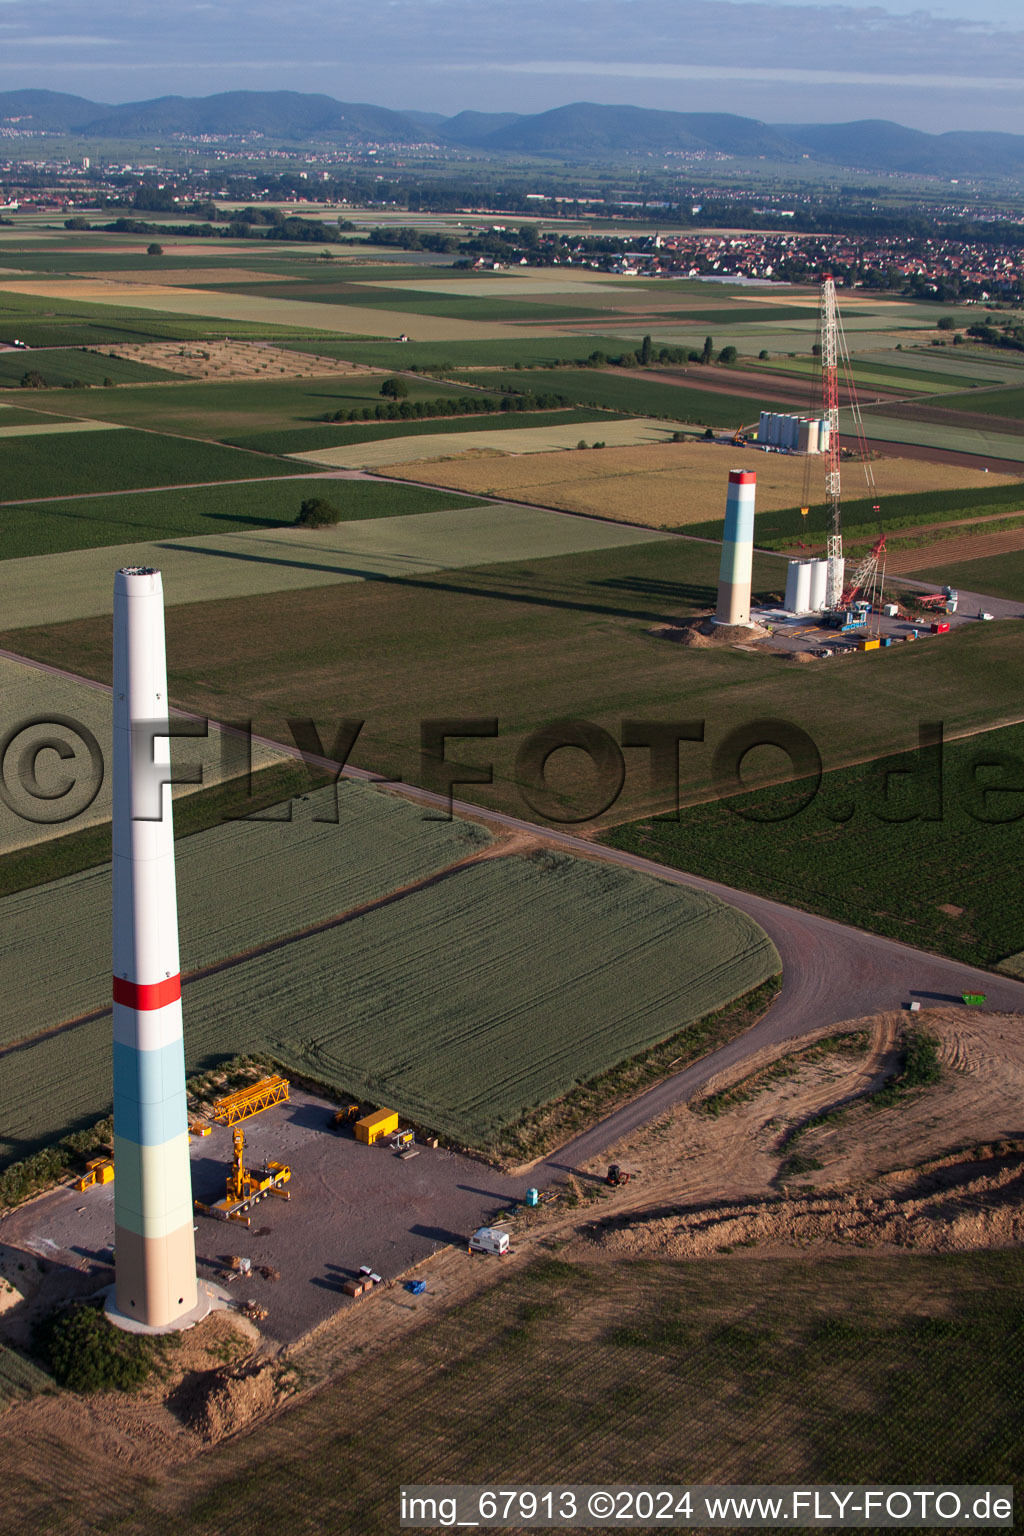 Nouveau parc éolien à Offenbach an der Queich dans le département Rhénanie-Palatinat, Allemagne vue d'en haut